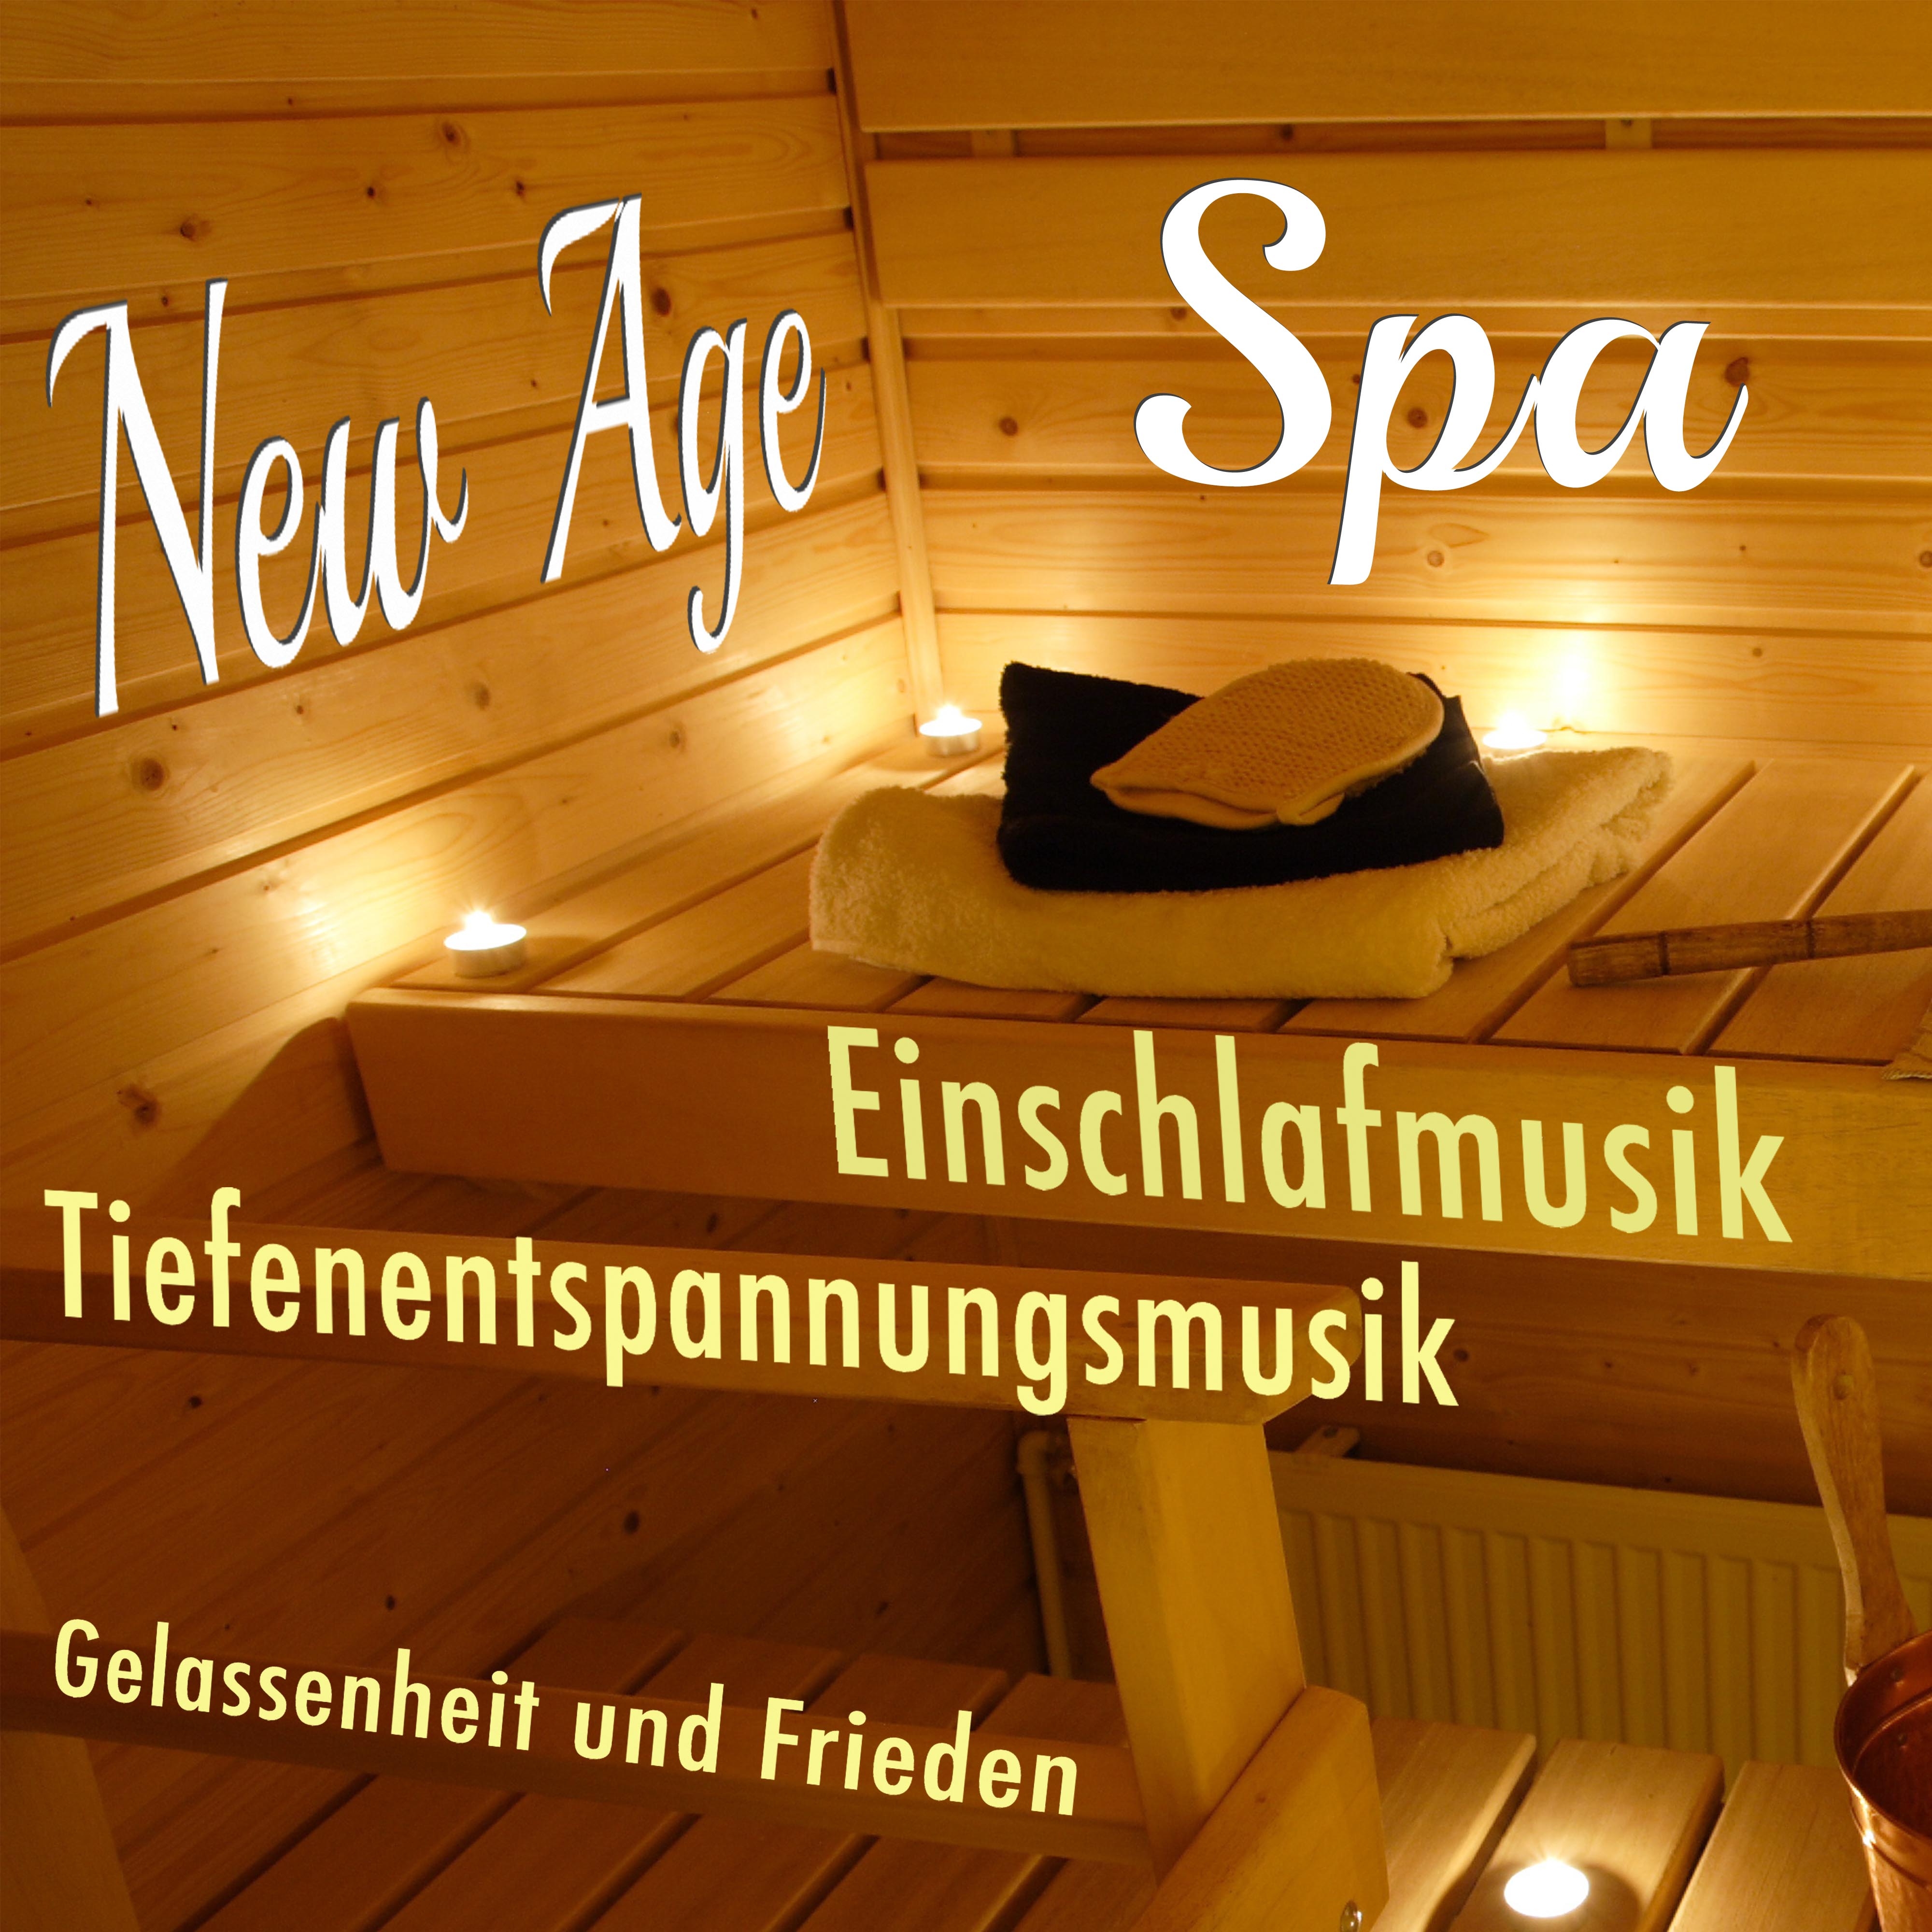 New Age Spa: Einschlafmusik und Tiefenentspannungsmusik für Gelassenheit und Frieden